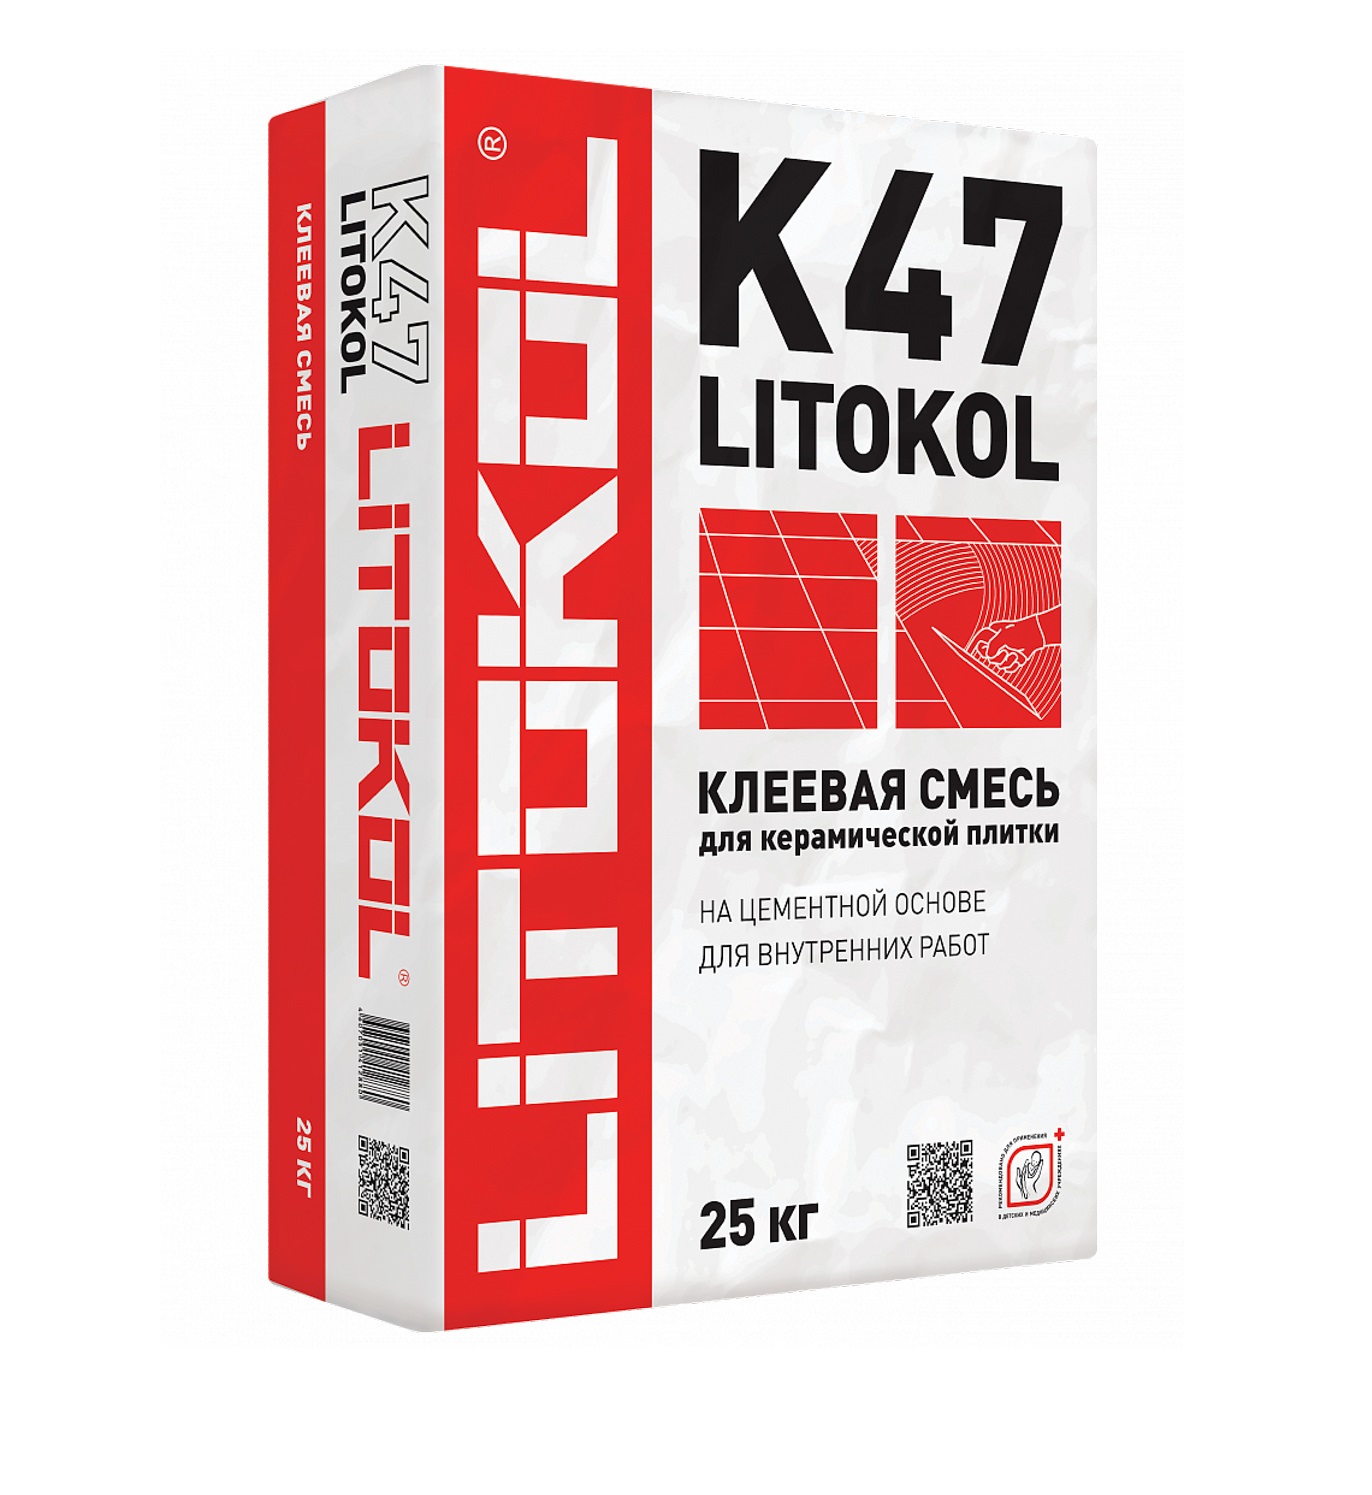 Плиточный клей LITOKOL K47 (Литокол К47) 25 кг